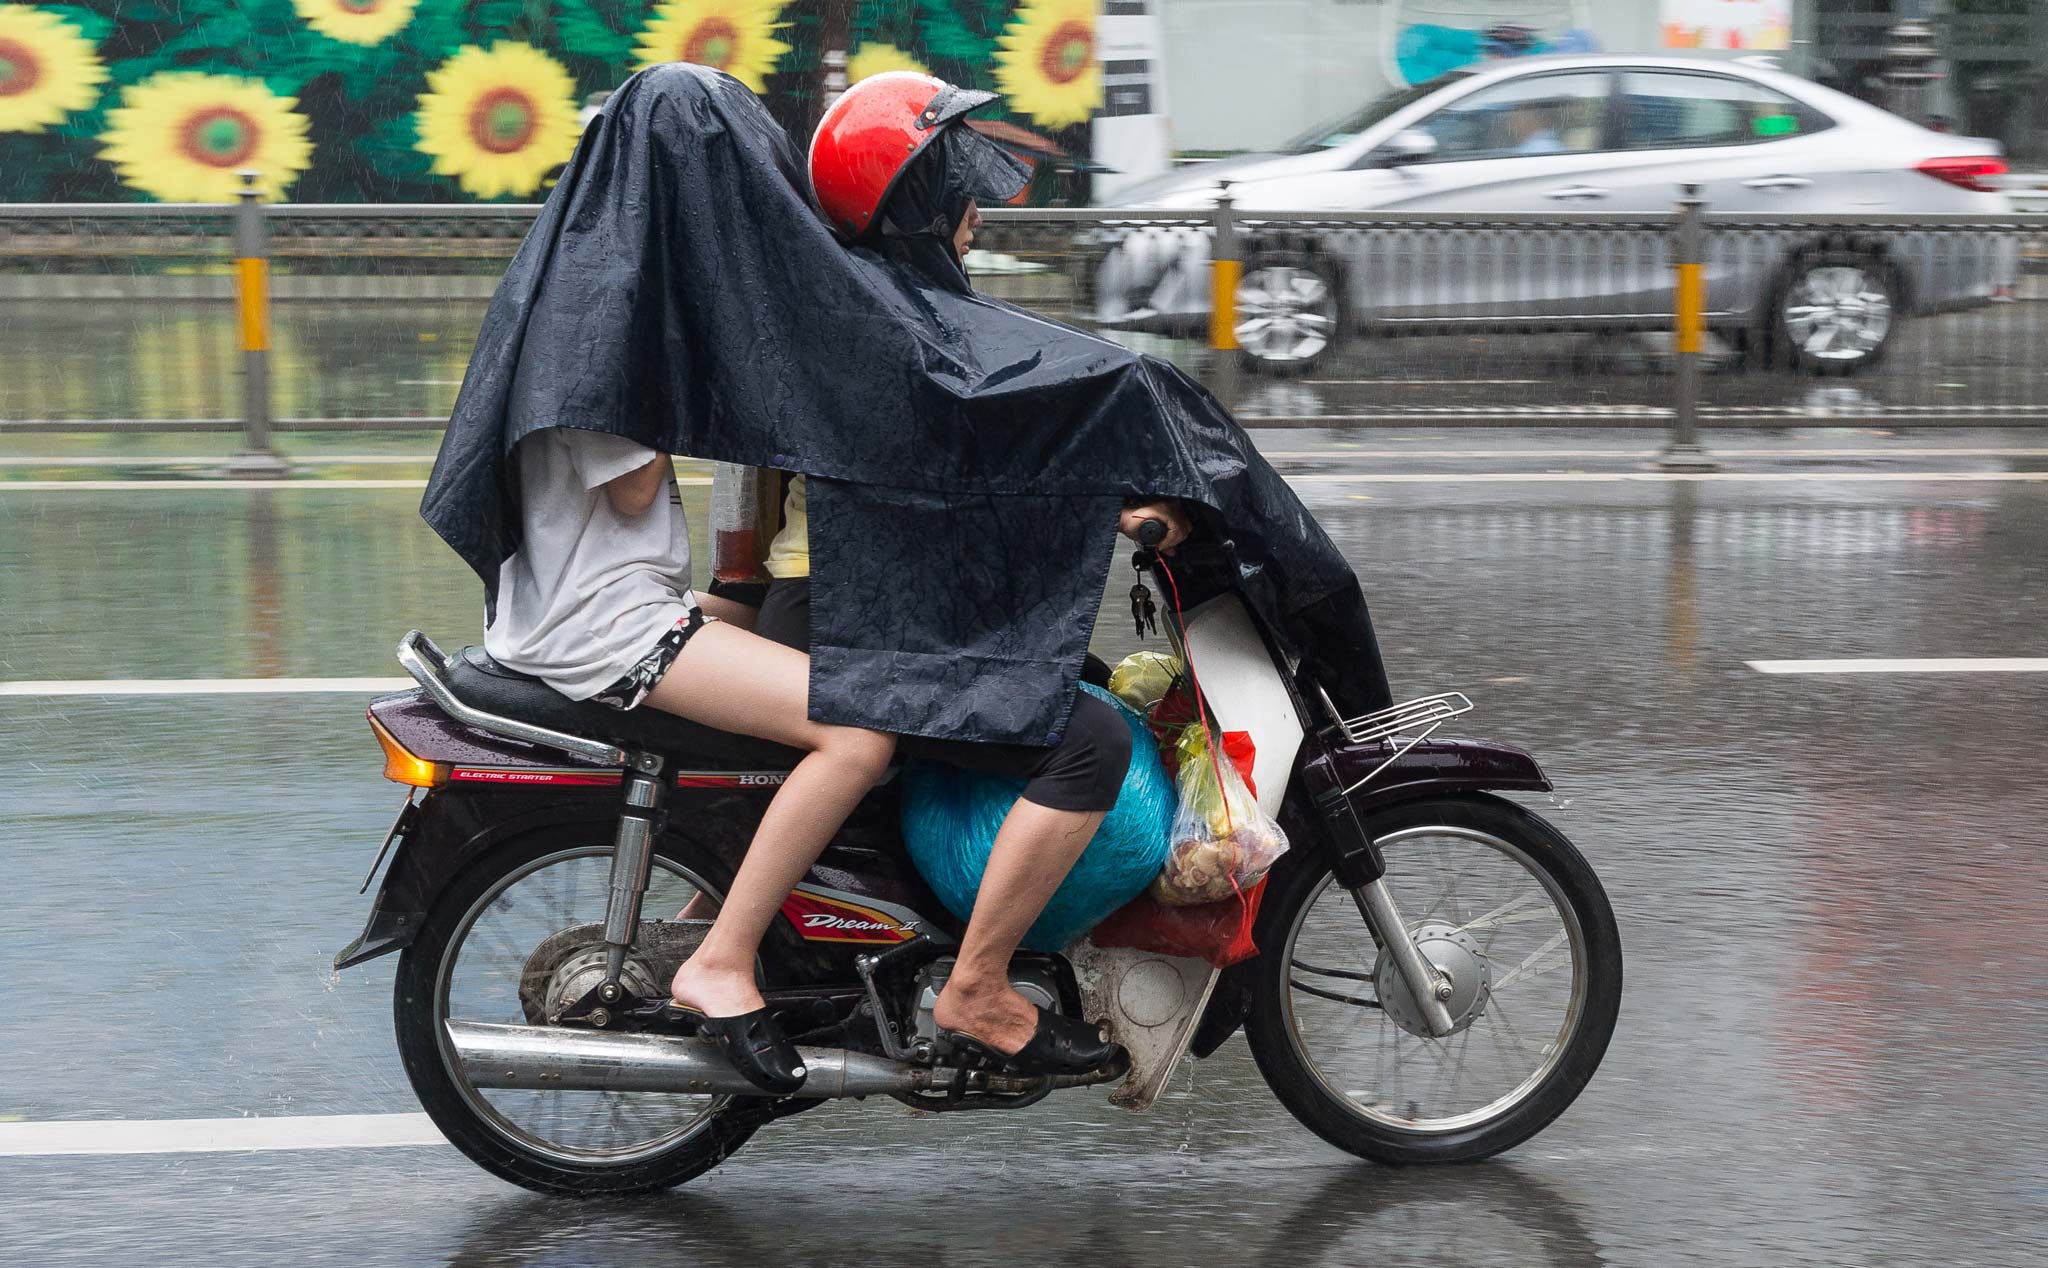 Anh em sử dụng áo mưa cánh dơi hay áo mưa bộ khi đi xe máy?